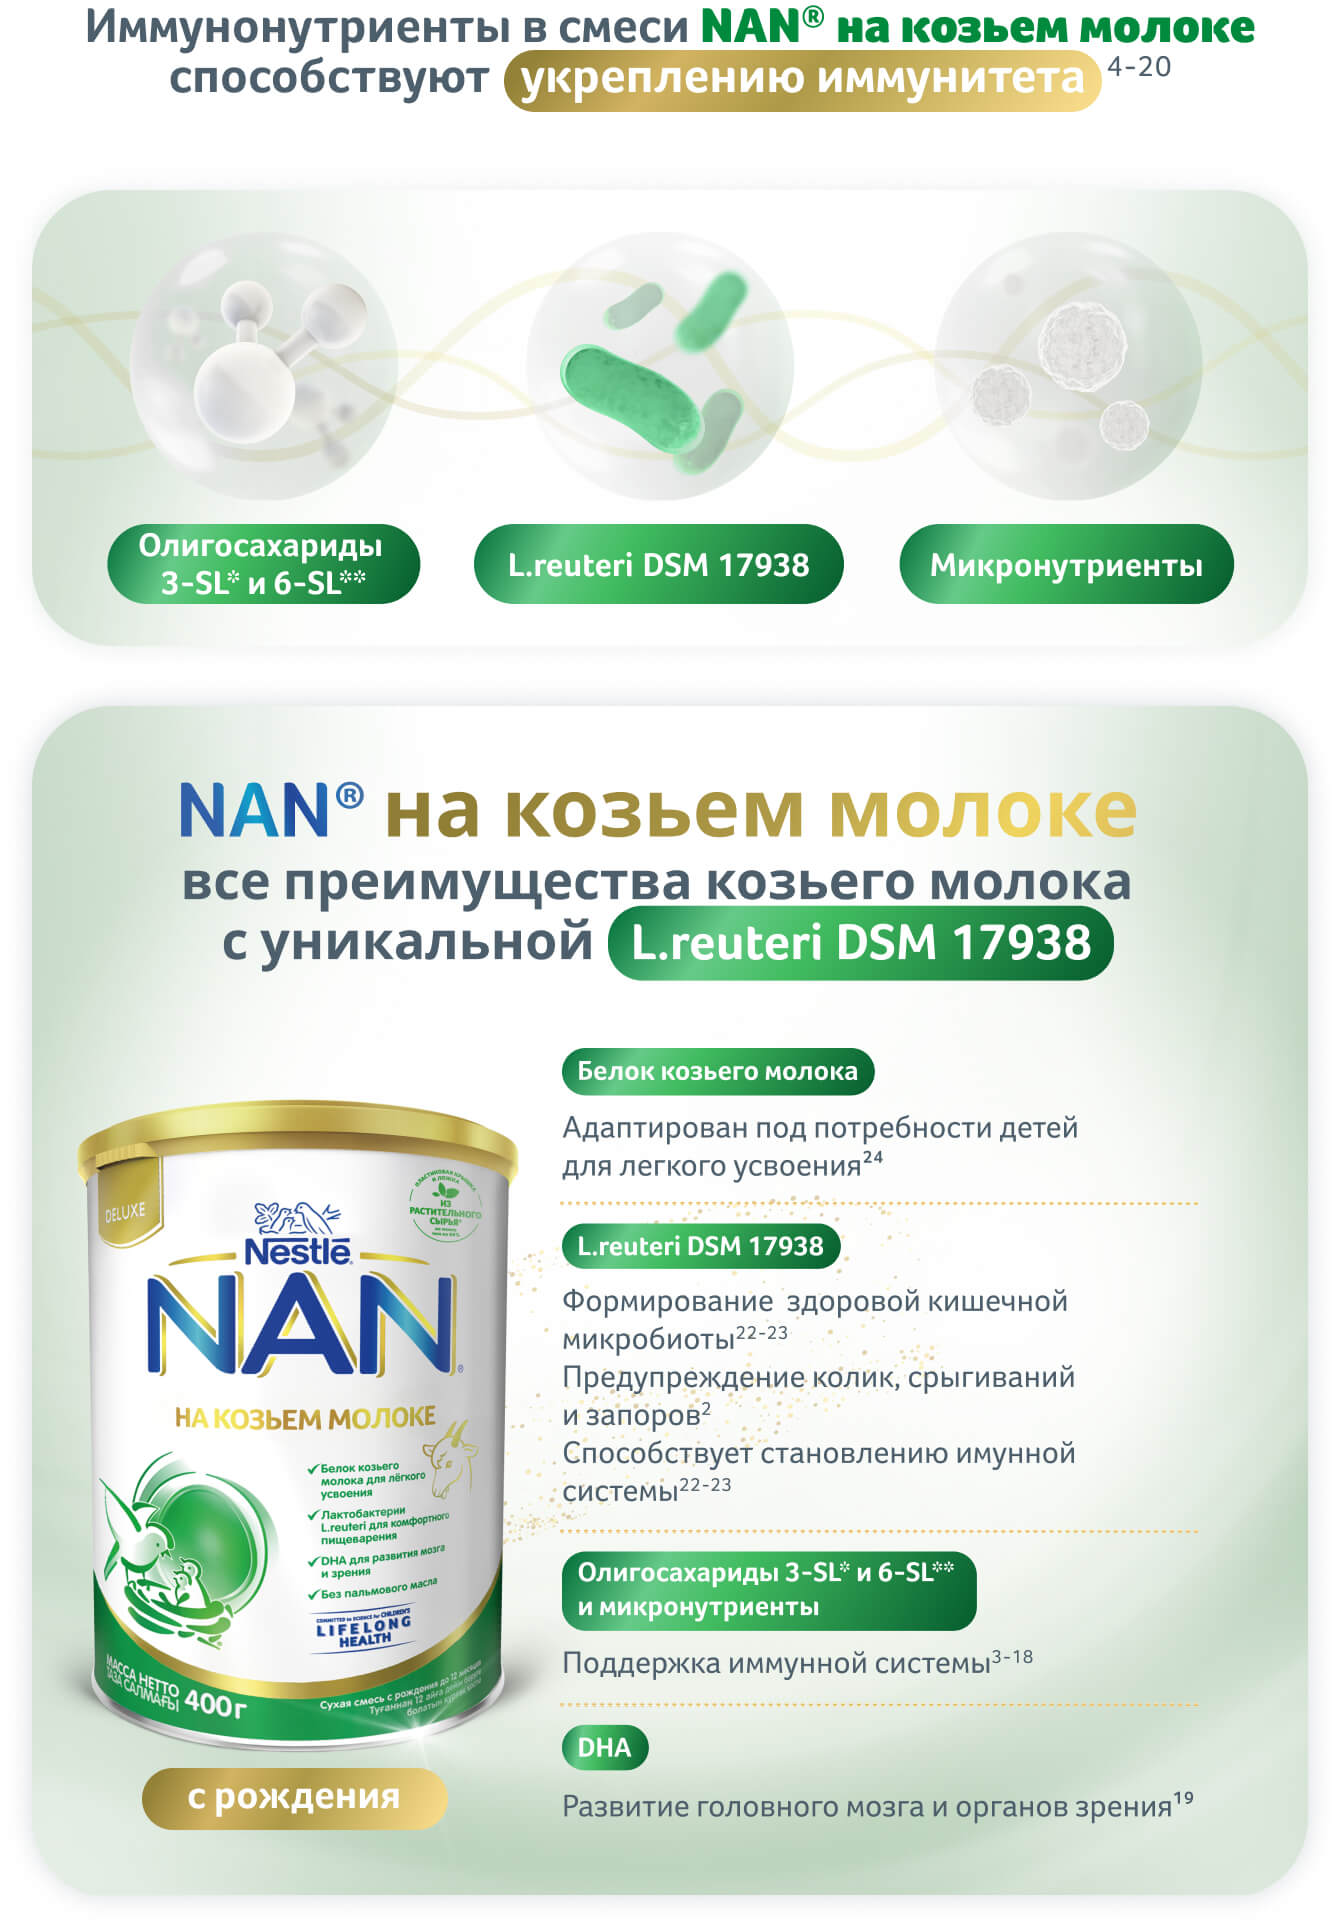 Иммунонутриенты в смеси NAN® на козьем молоке помогают укреплению иммунитета